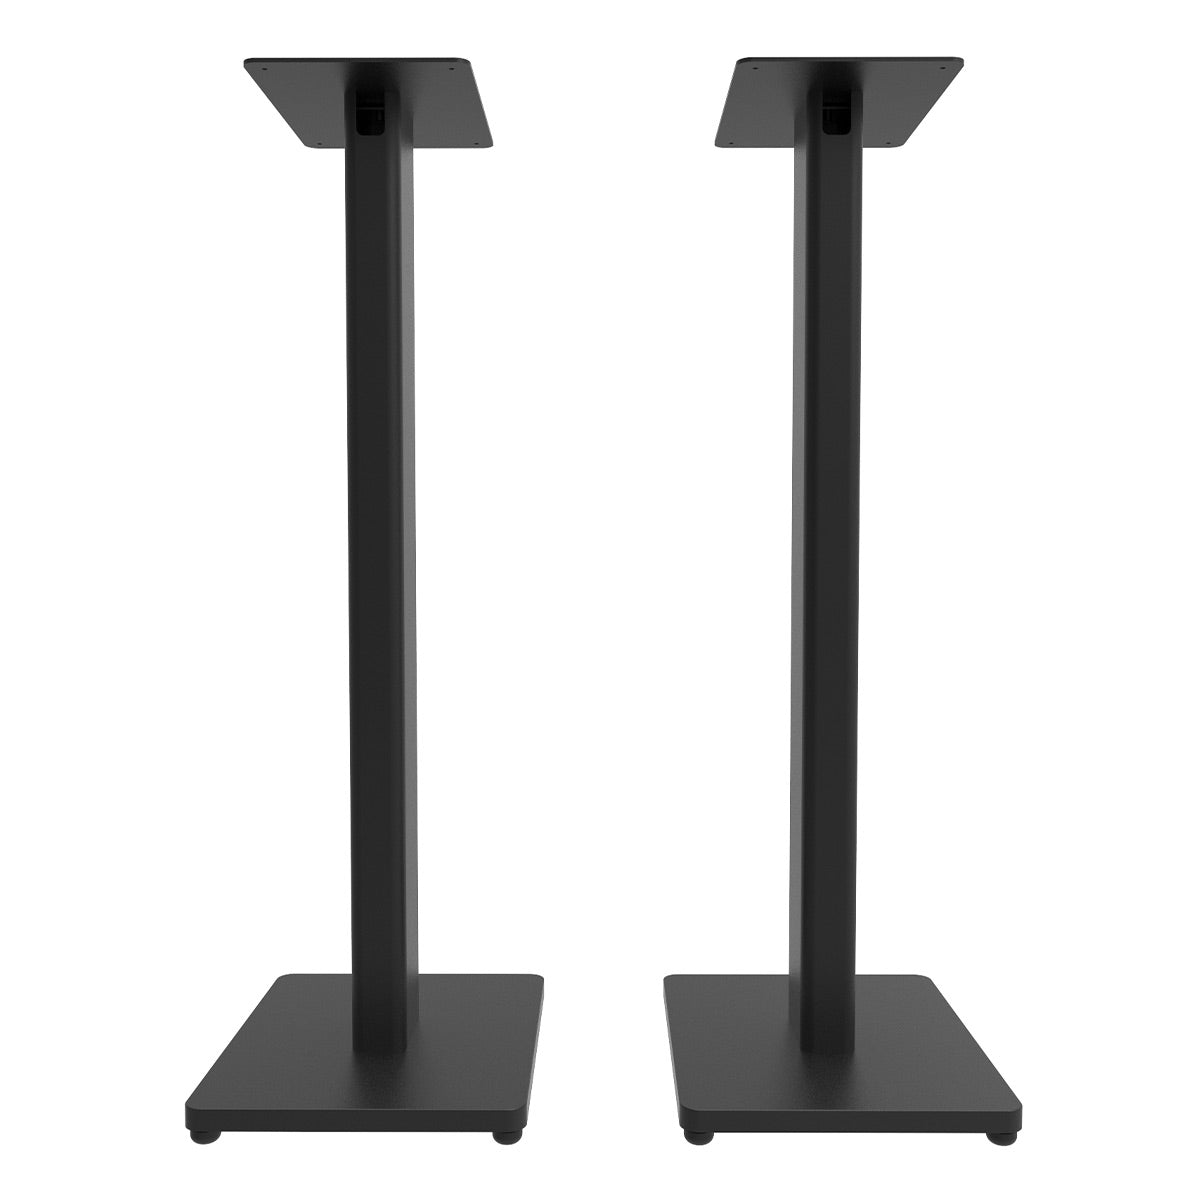 Kanto ST 28" Universal Bookshelf Speaker Floor Stand - Pair (Black)